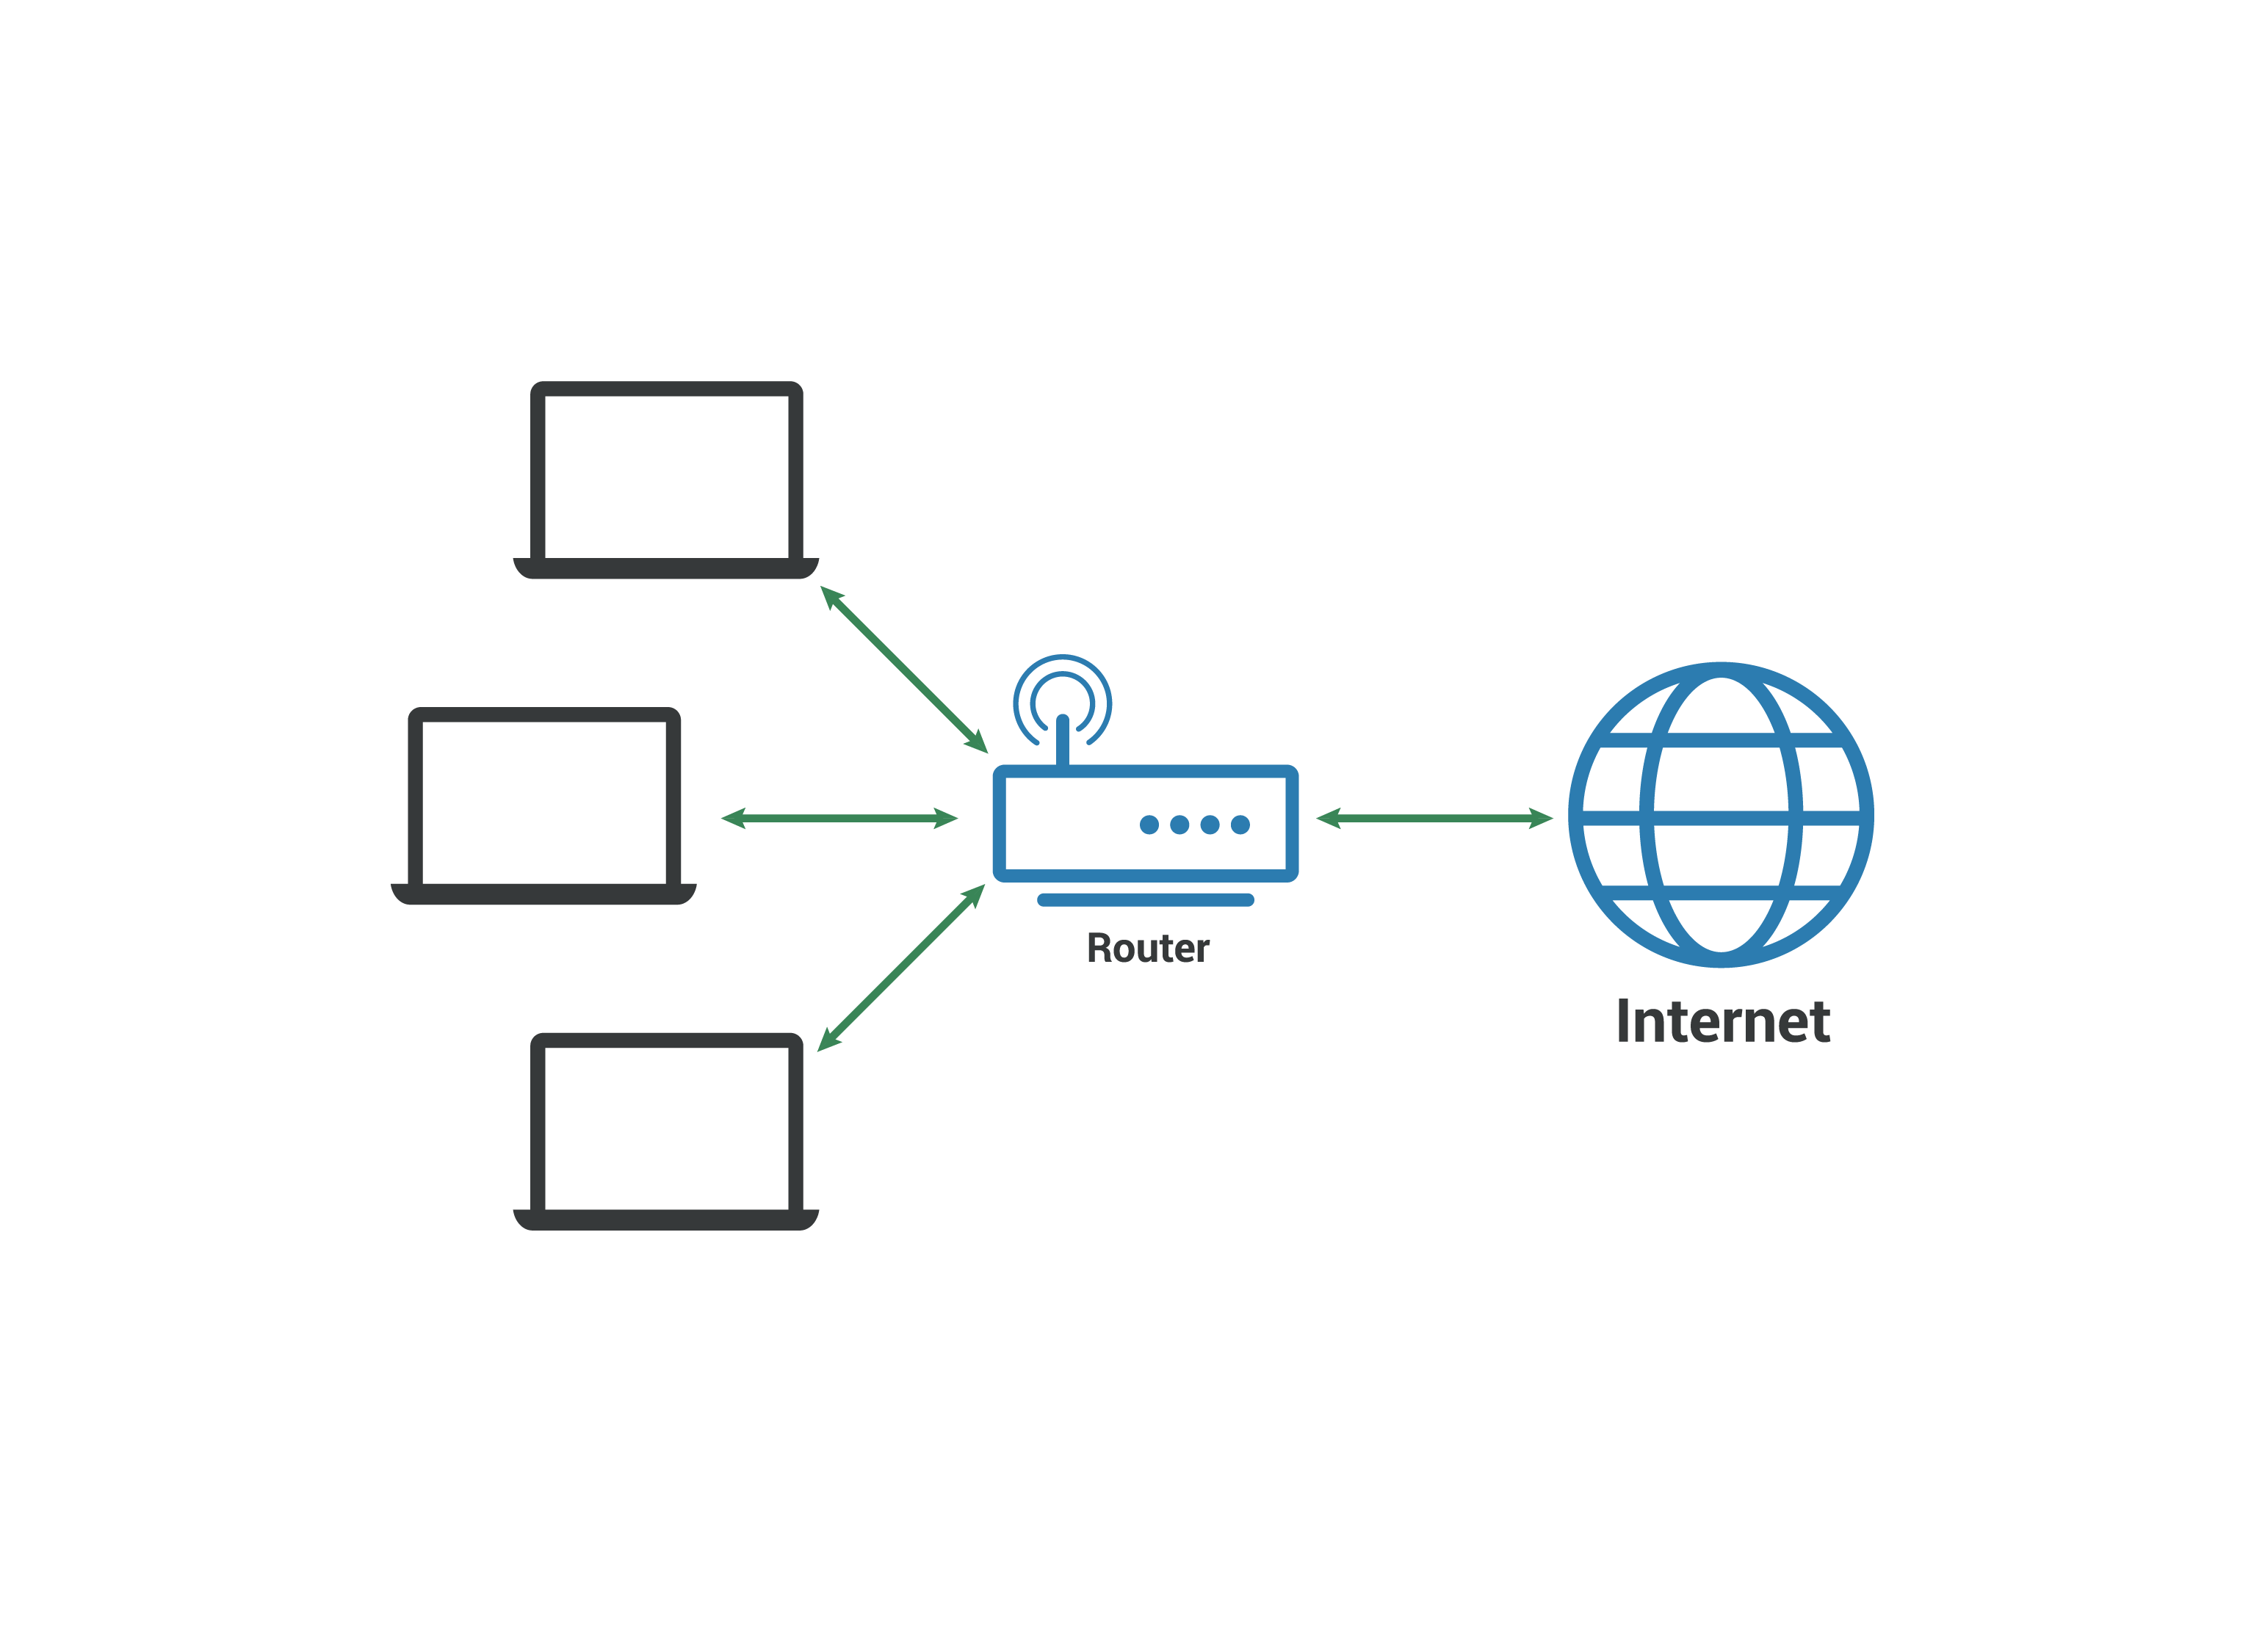 局域网 LAN - 计算机连接到路由器，该路由器连接到互联网